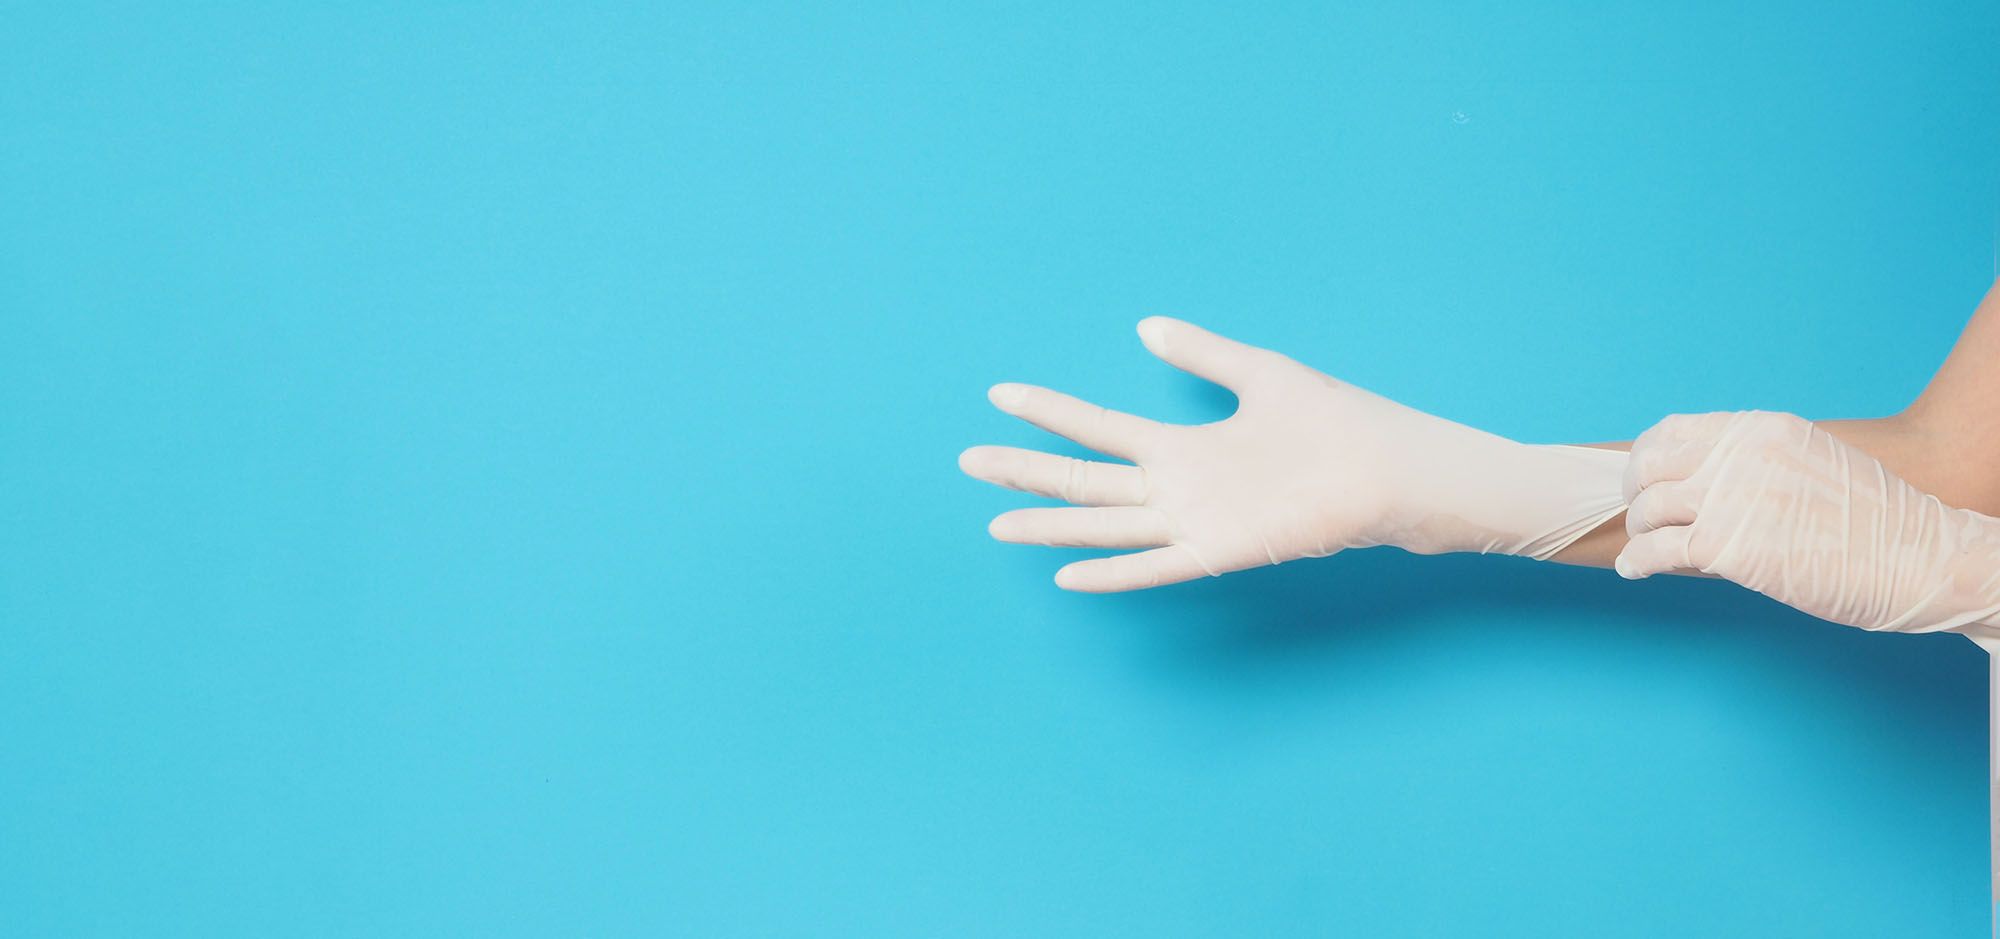 Hände, die weiße Medizin-Handschuhe tragen vor hellblauem Hintergrund